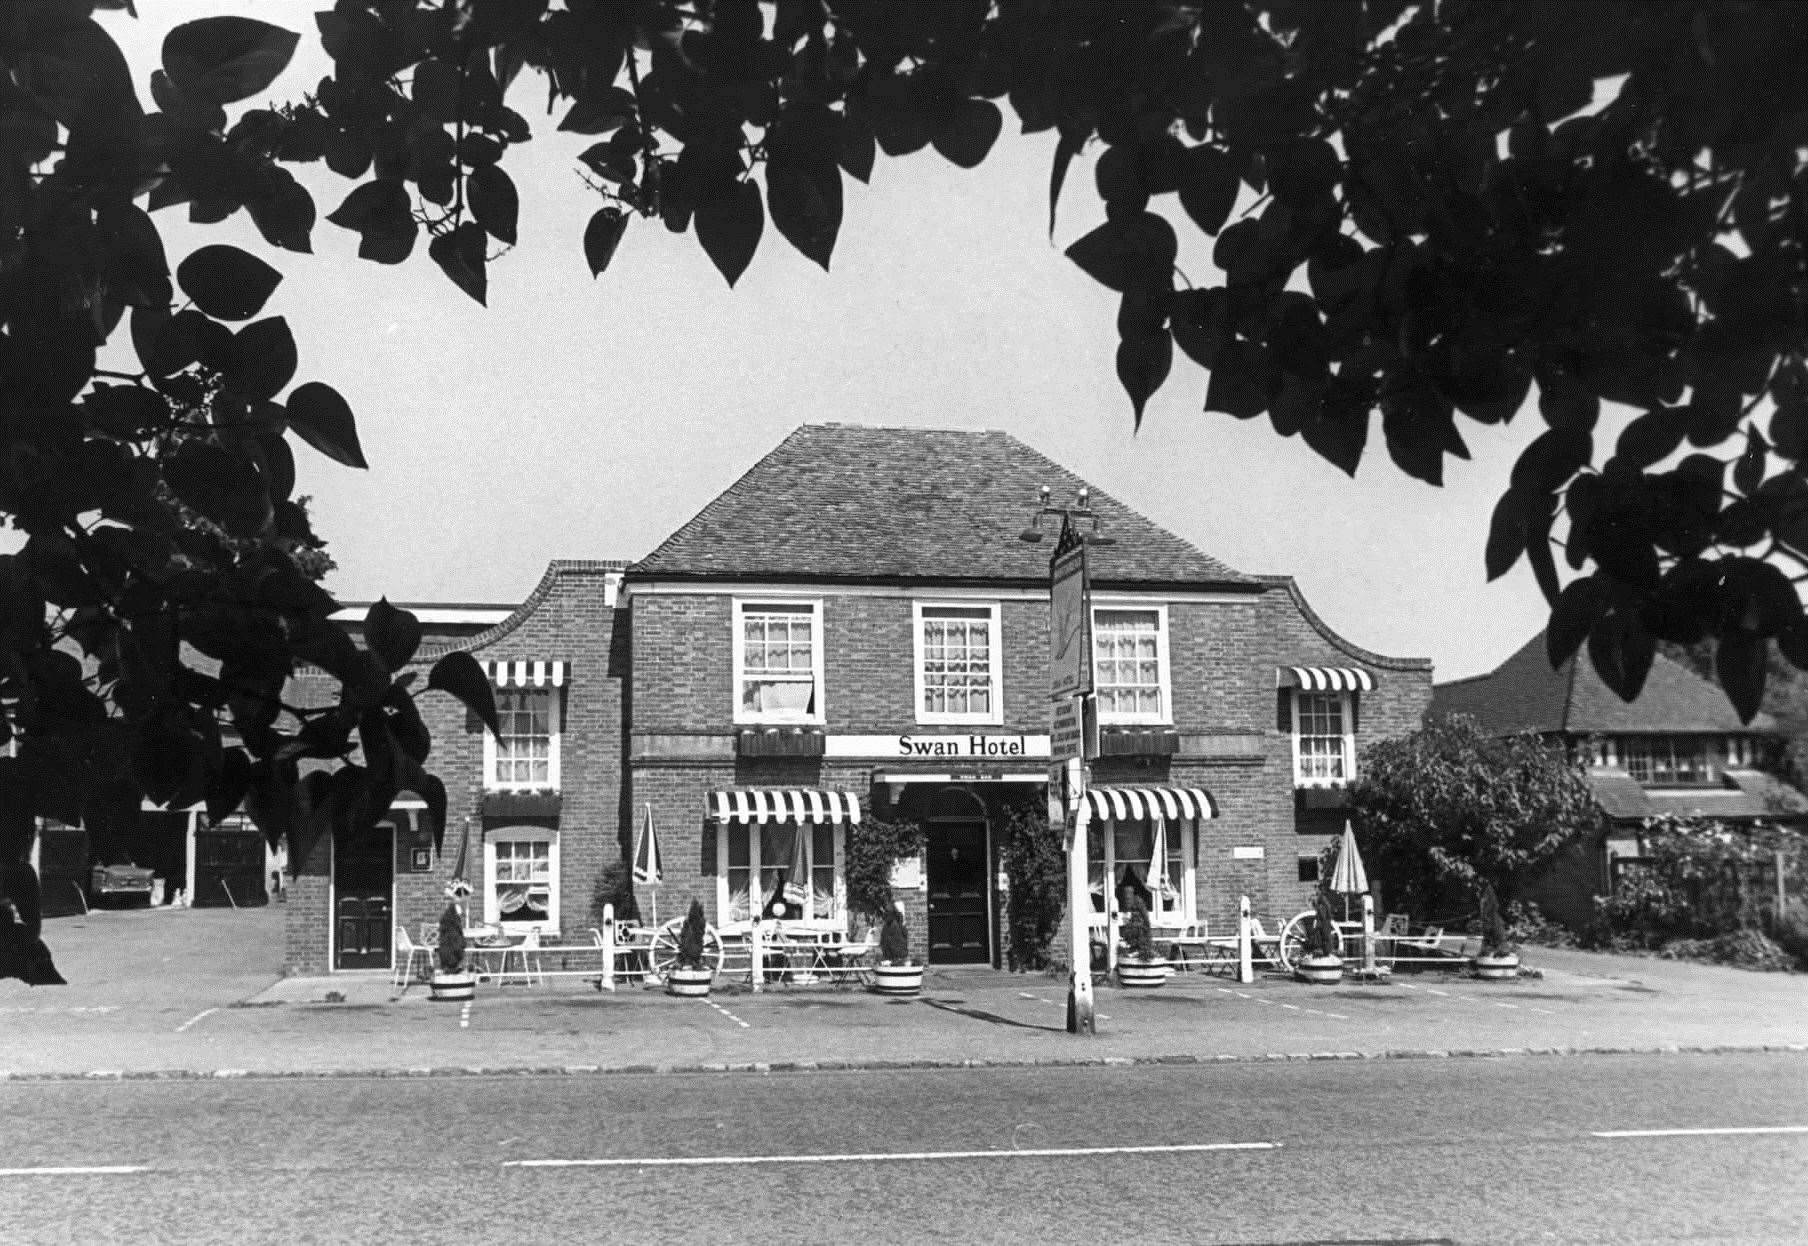 Swan Hotel, Appledore in 1981